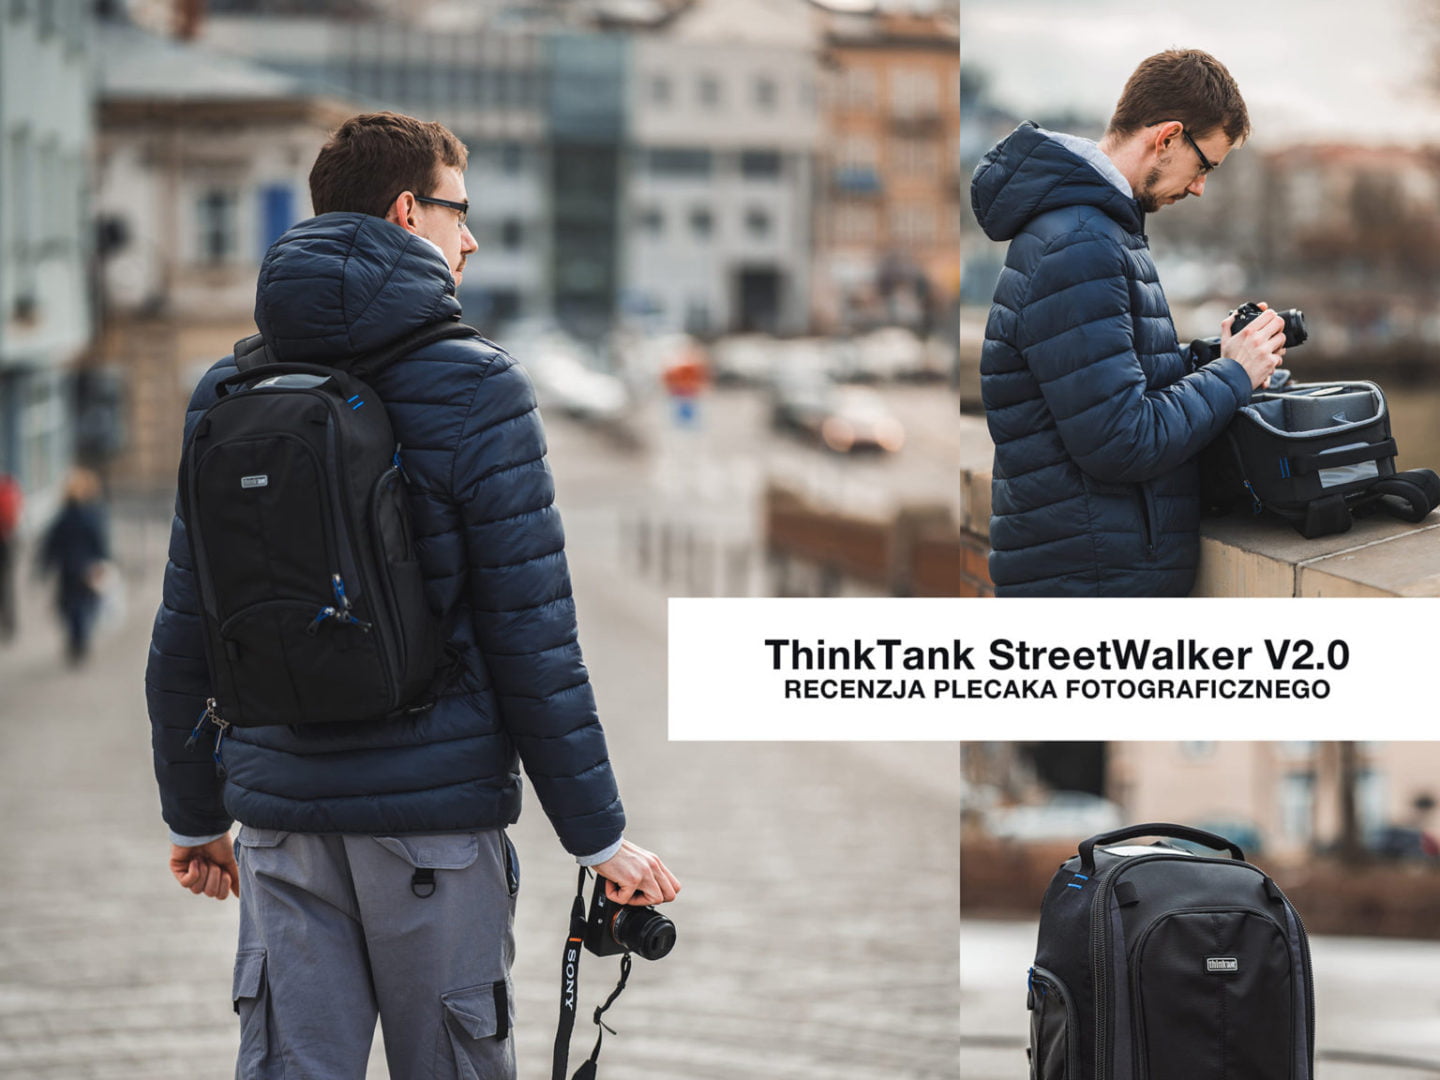 ThinkTank StreetWalker V2.0 – recenzja